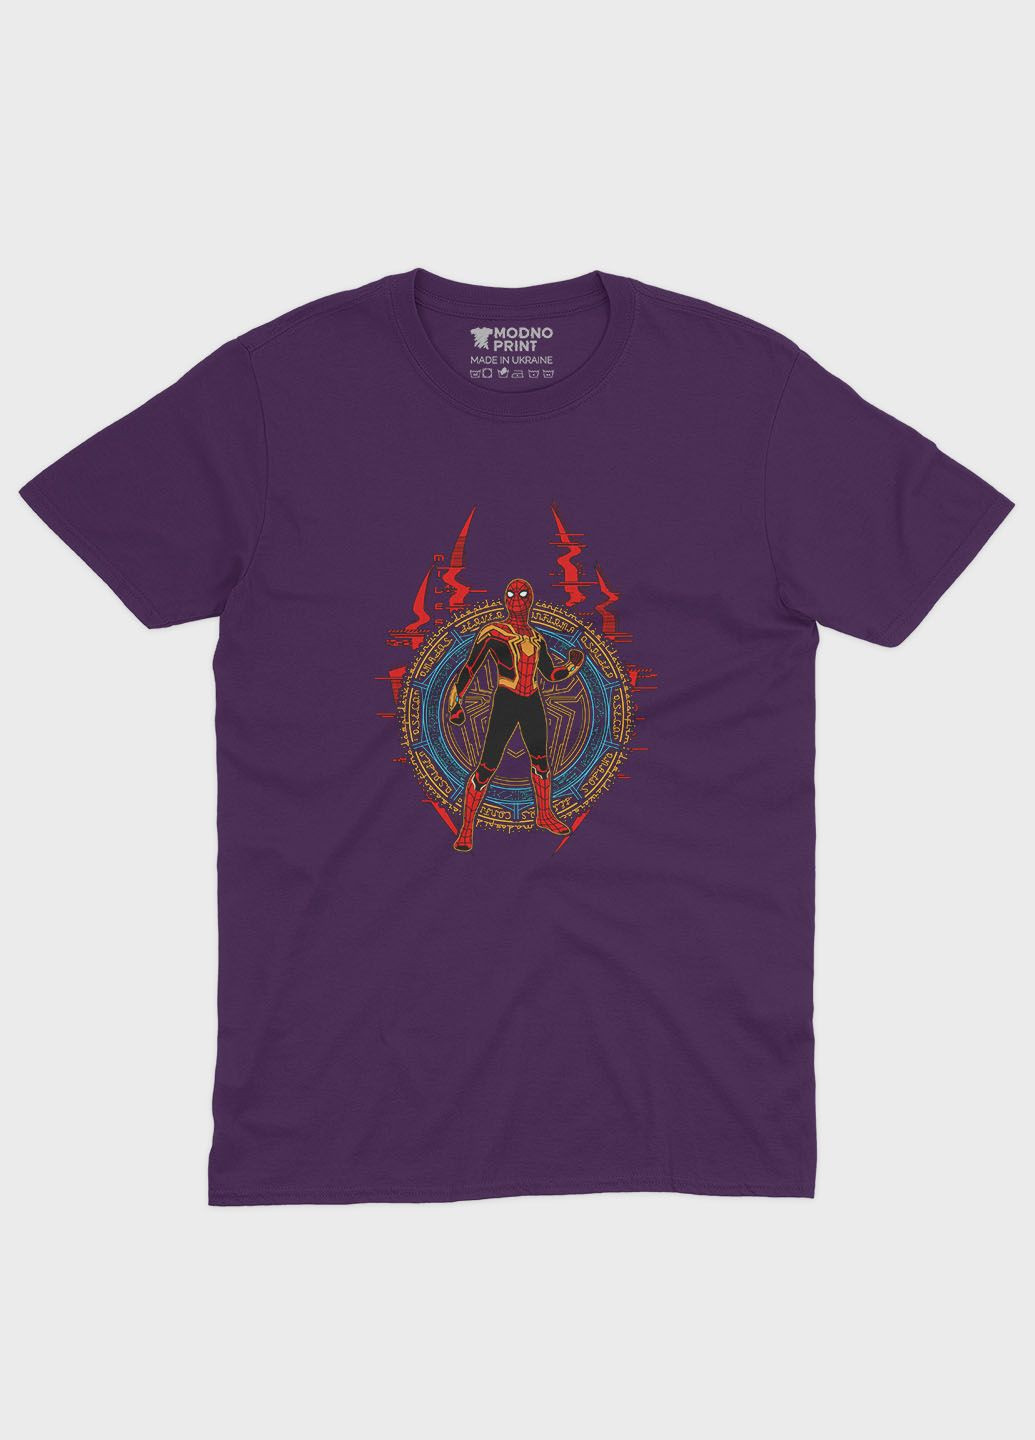 Фиолетовая демисезонная футболка для девочки с принтом супергероя - человек-паук (ts001-1-dby-006-014-011-g) Modno